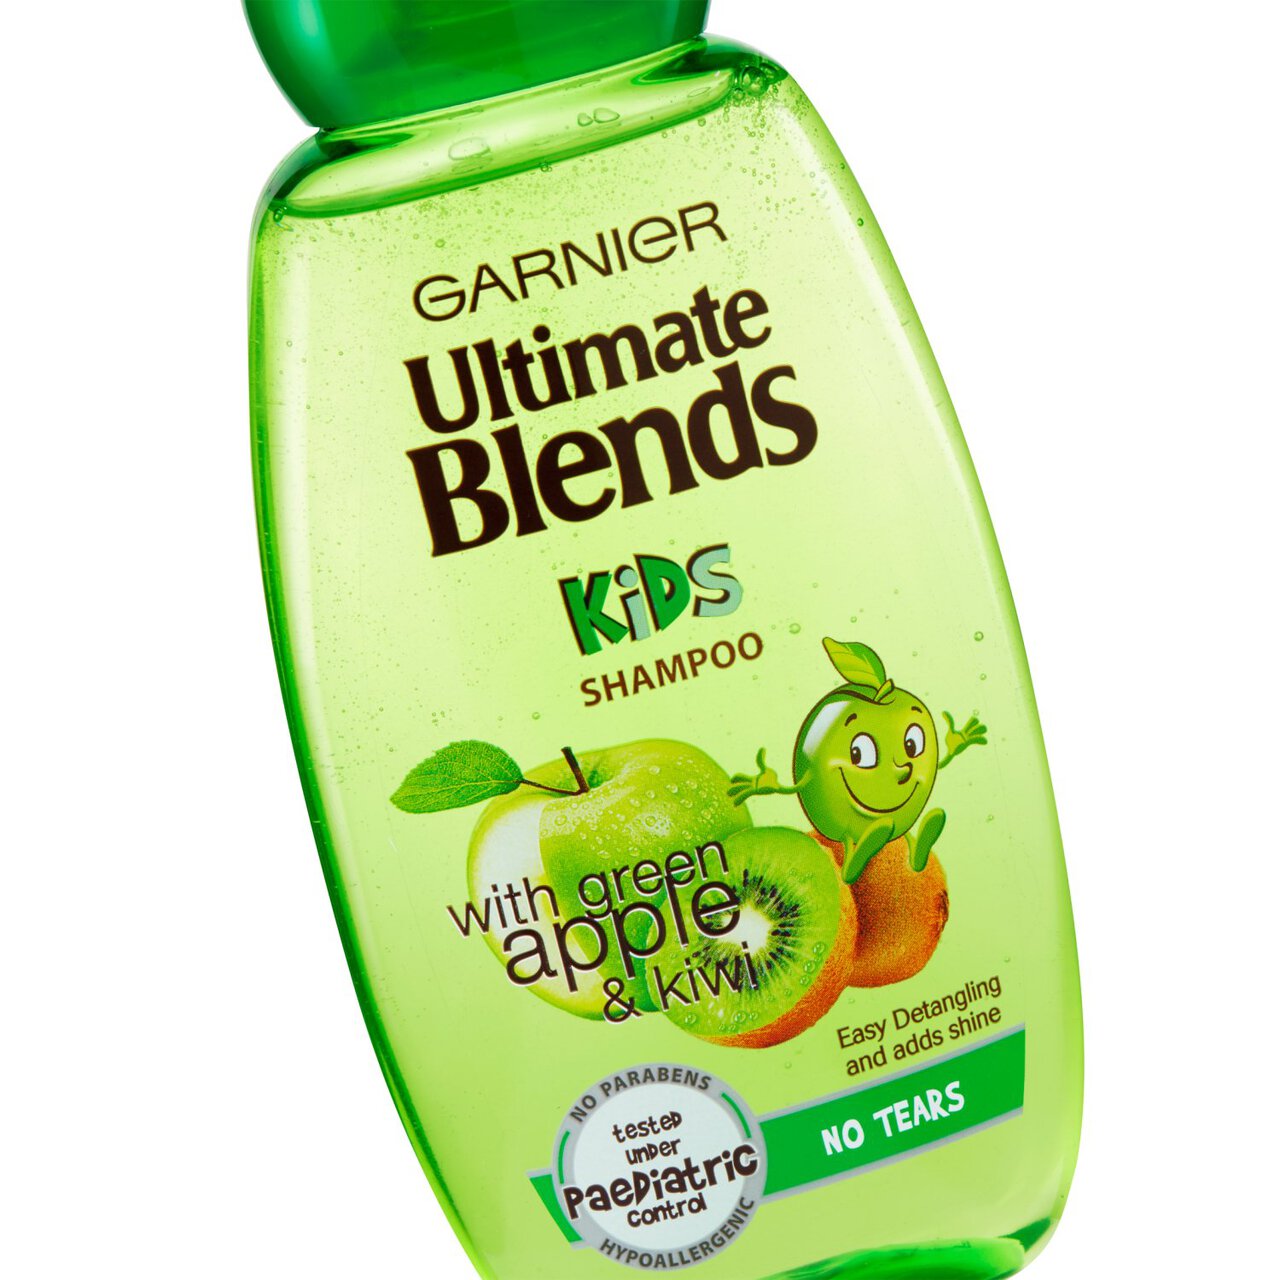 Garnier Ultimate Blends 2-in-1 Kids Apple & Kiwi No Tears Shampoo 250ml